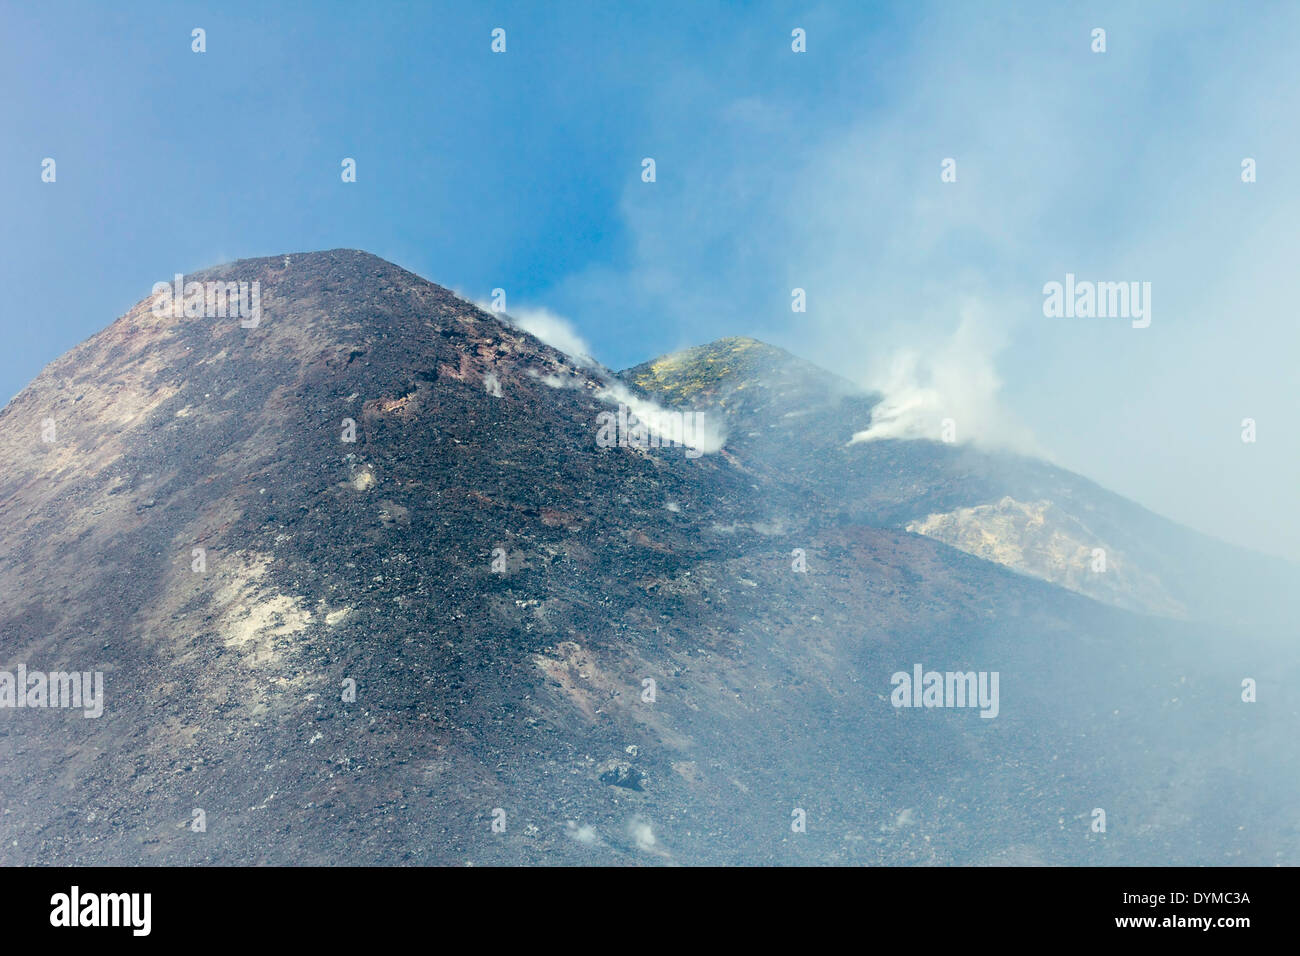 Sulpur, Ash & roccia lavica al vertice di fumatori di 3350m vulcano Etna durante una fase attiva; il monte Etna, Sicilia, Italia Foto Stock